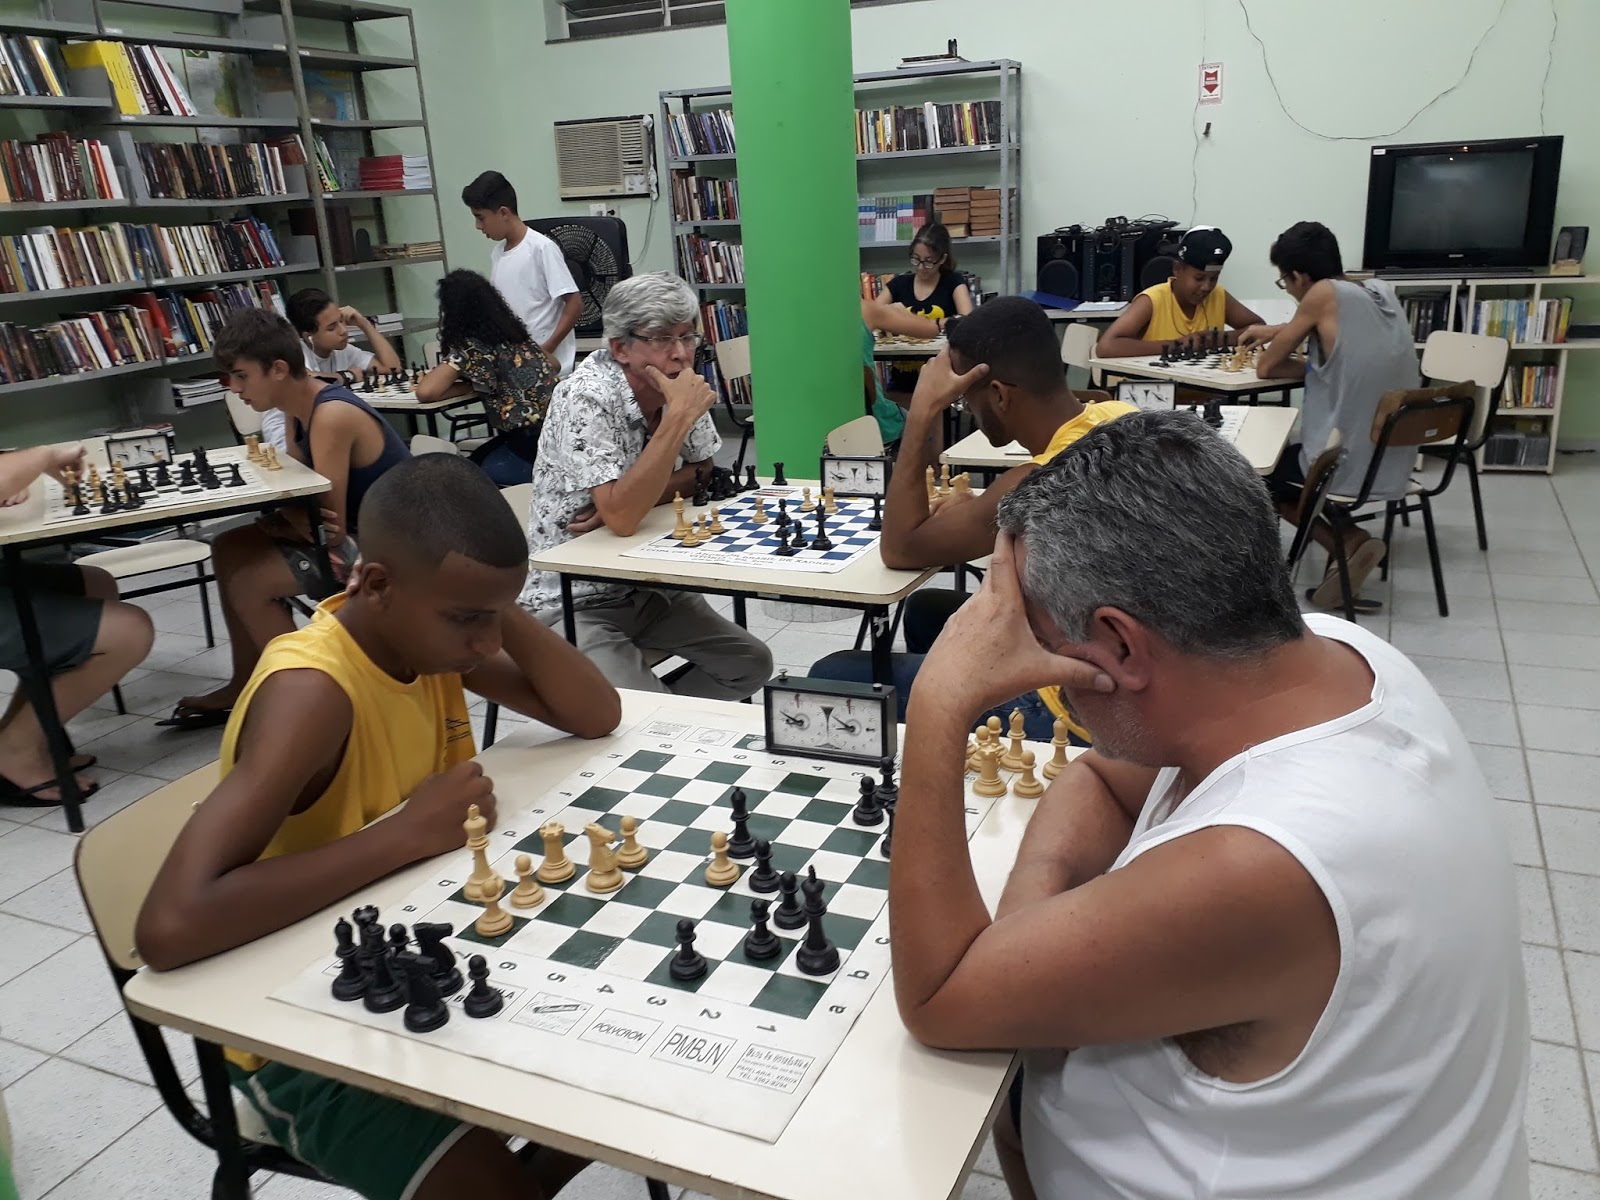 O NORTE FLUMINENSE, Bom Jesus do Itabapoana (RJ): Clube de Xadrez de Bom  Jesus do Norte é evidência de que é possível construir um mundo diferente